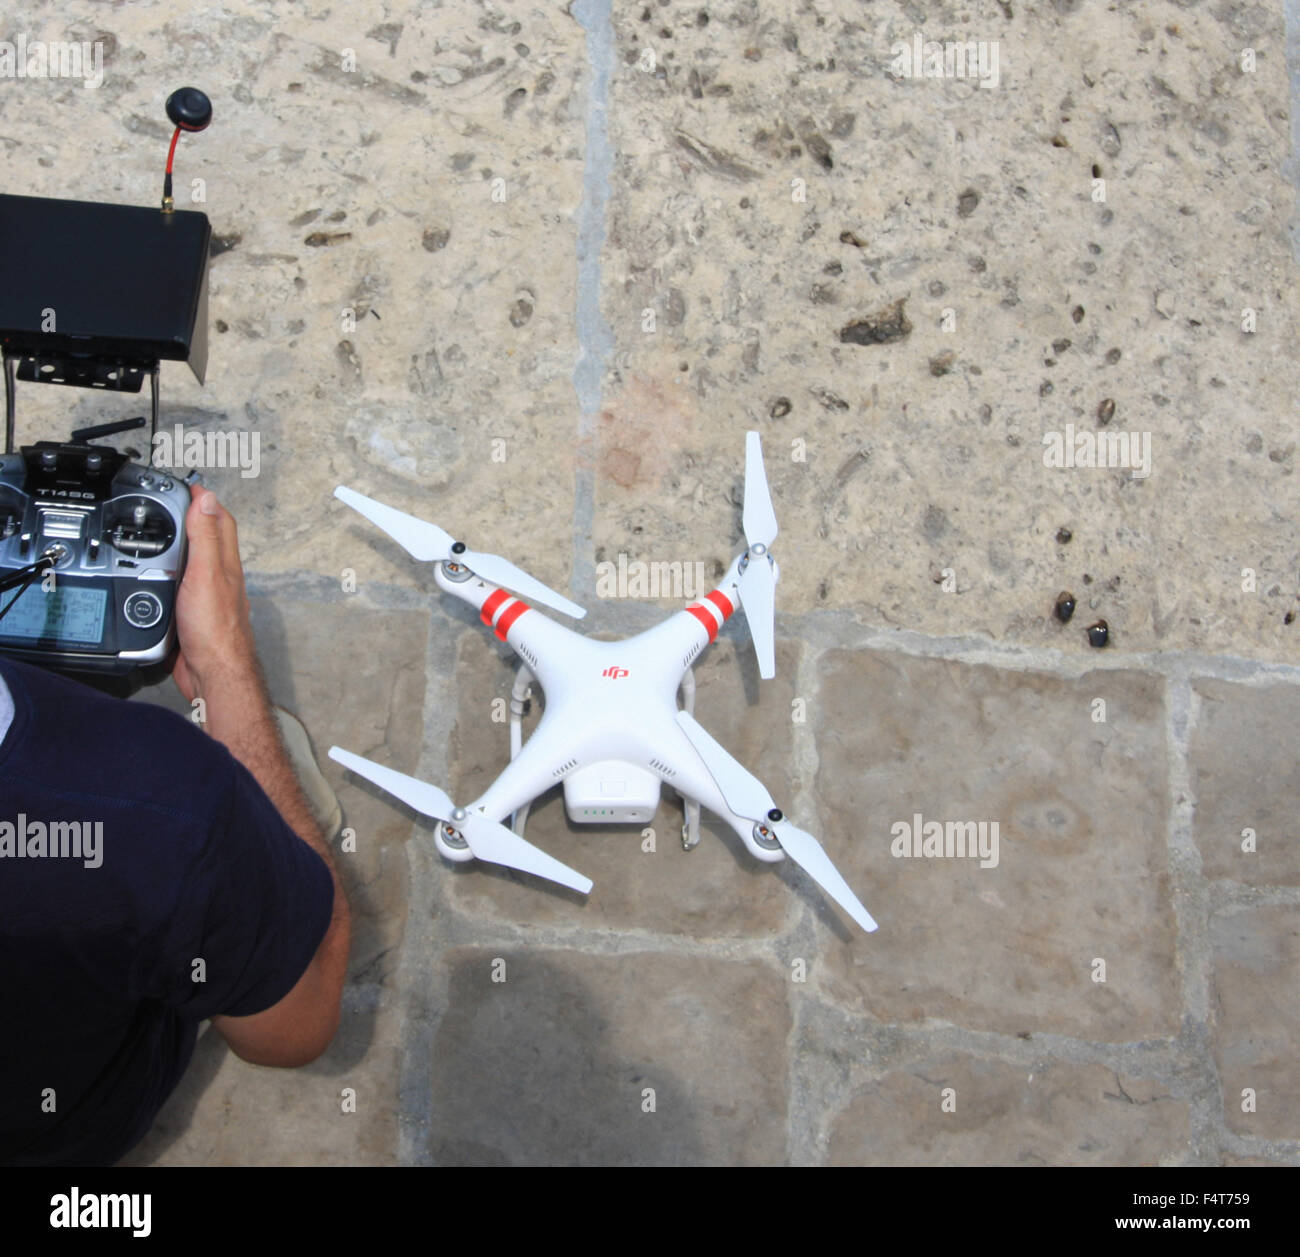 Drone, control remoto, hélice, supervisión, vigilancia, Foto de stock